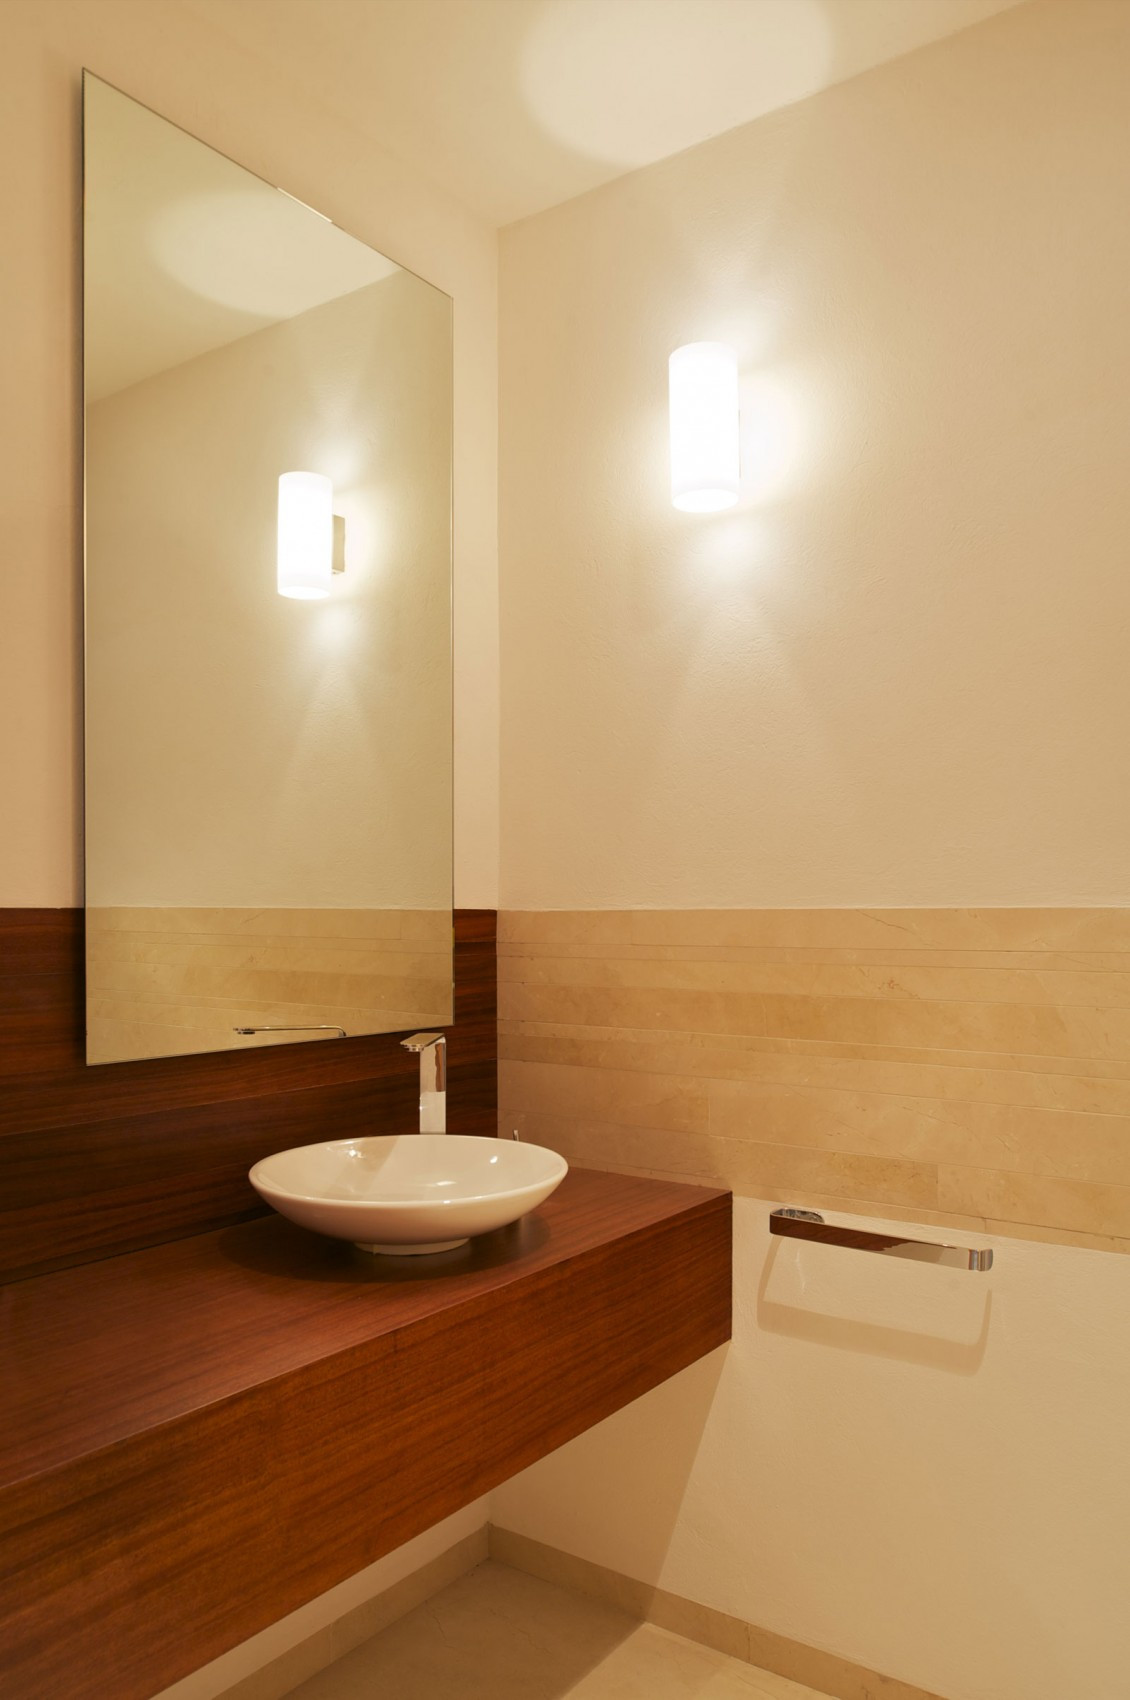 Bathroom Vanity Lighting Design
 Bathroom Vanity Lighting Covered in Maximum Aesthetic